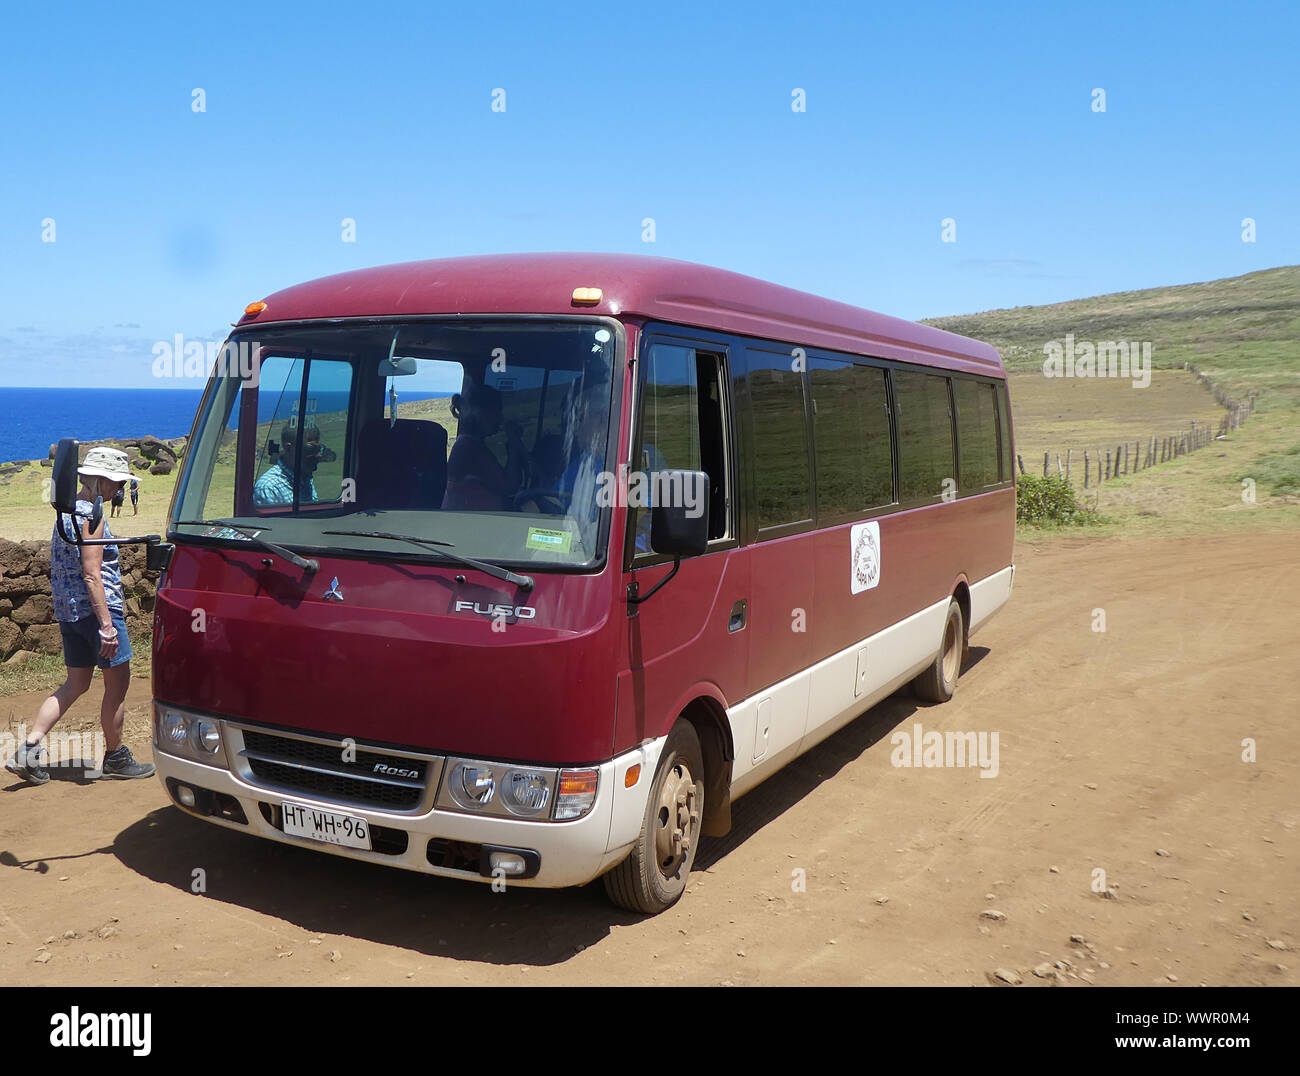 Mitsubishi Fuso tourist bus in Chile 2019. Stock Photo